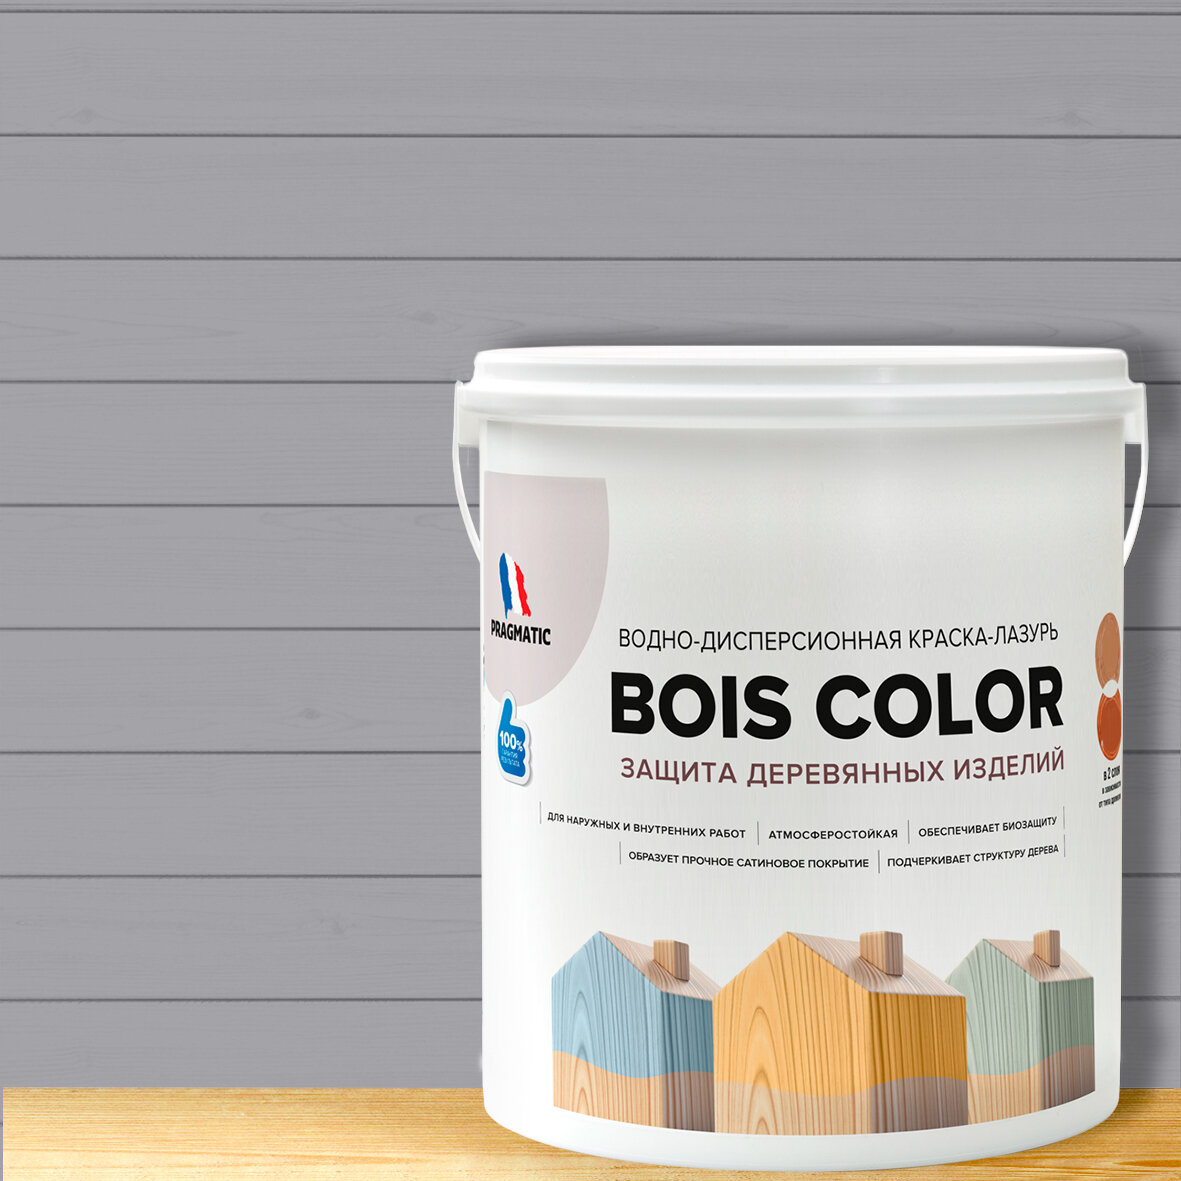 Краска (лазурь) для деревянных поверхностей и фасадов, обеспечивает биозащиту, защищает от плесени, грибков, атмосферостойкая, водоотталкивающая BOIS COLOR 0,9 л цвет Серый 8233